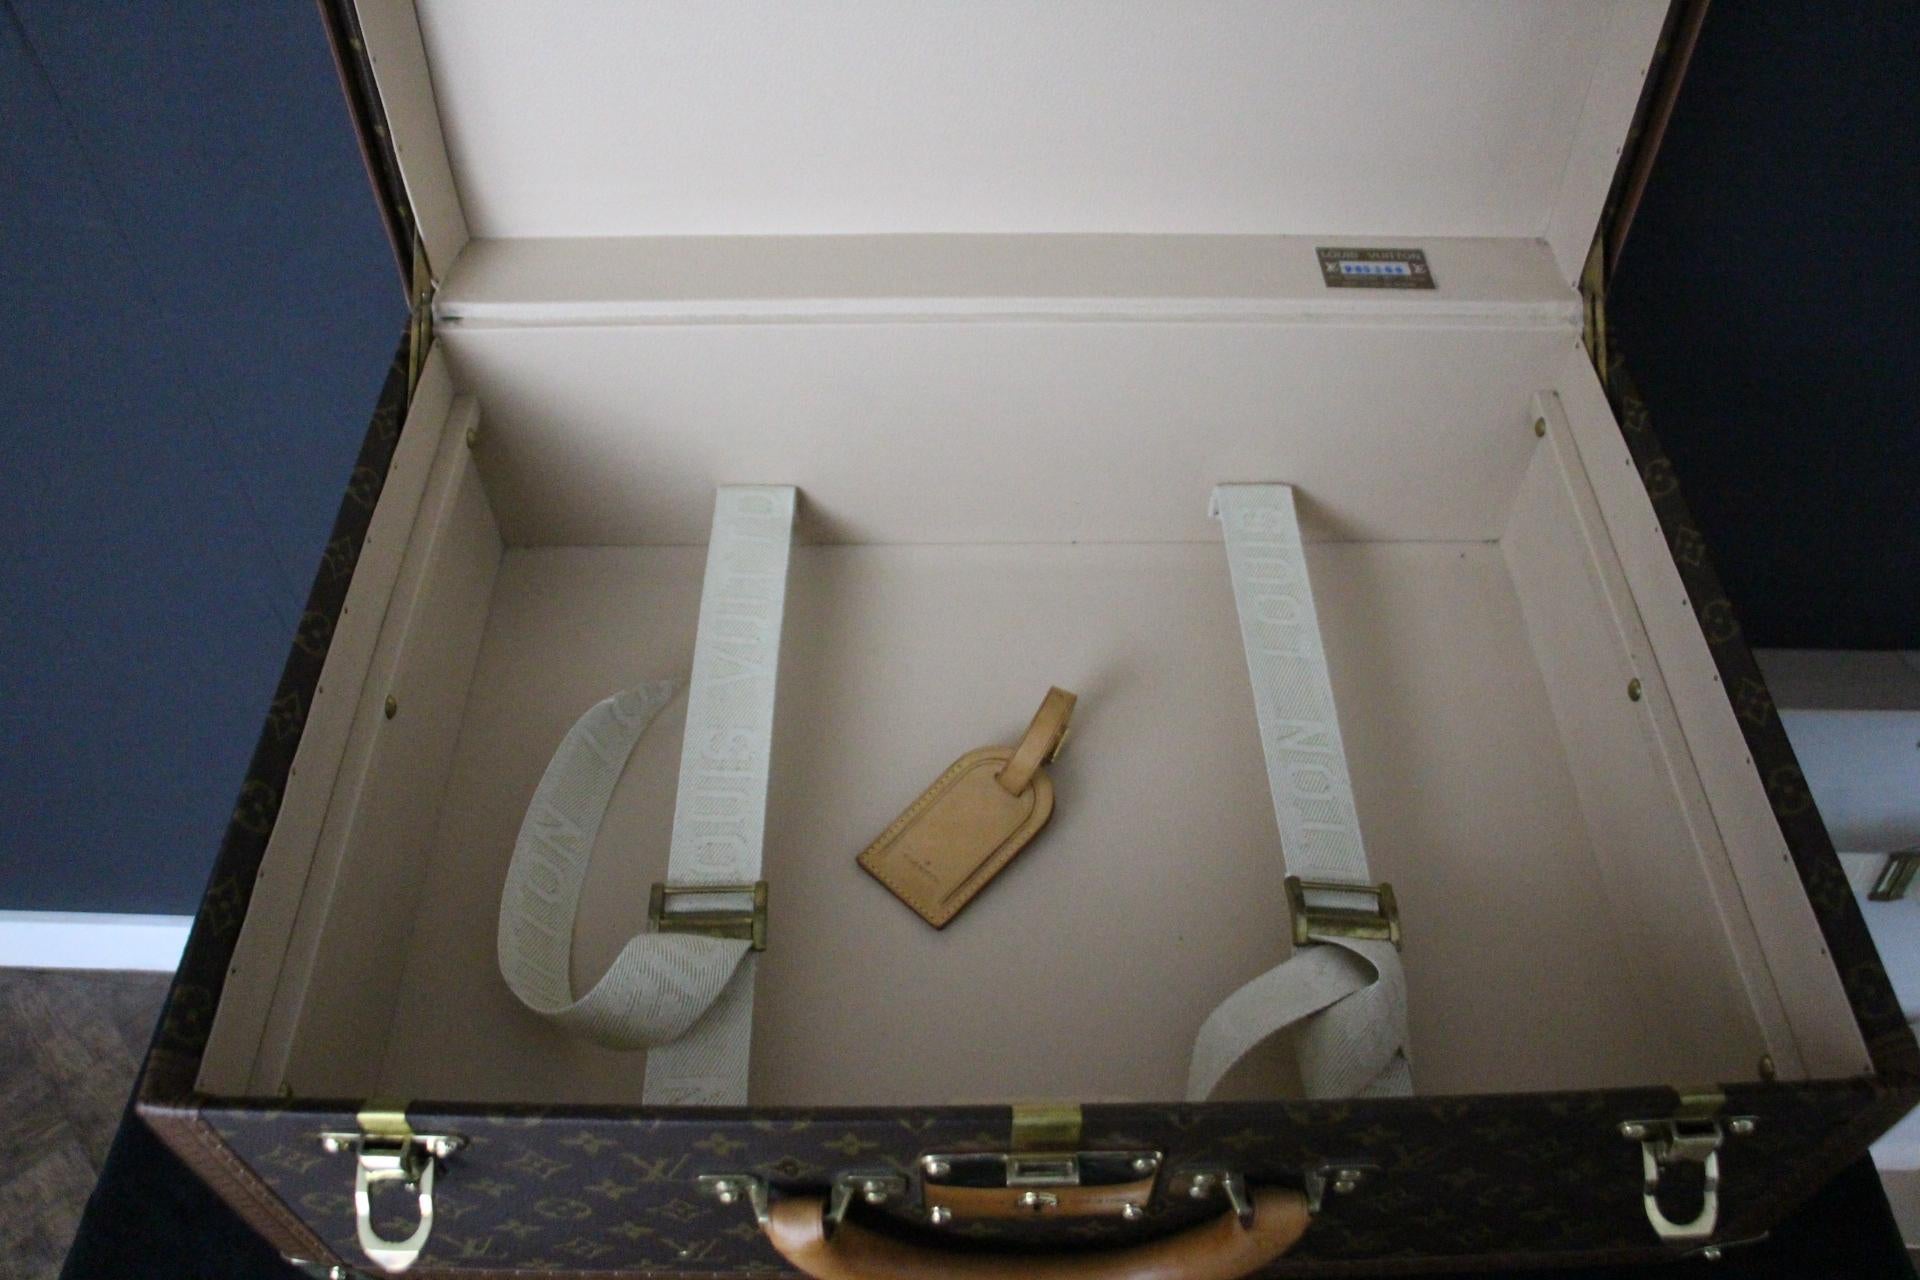  Valise Louis Vuitton, 55 Alzer valise Louis Vuitton, 55 cm 13